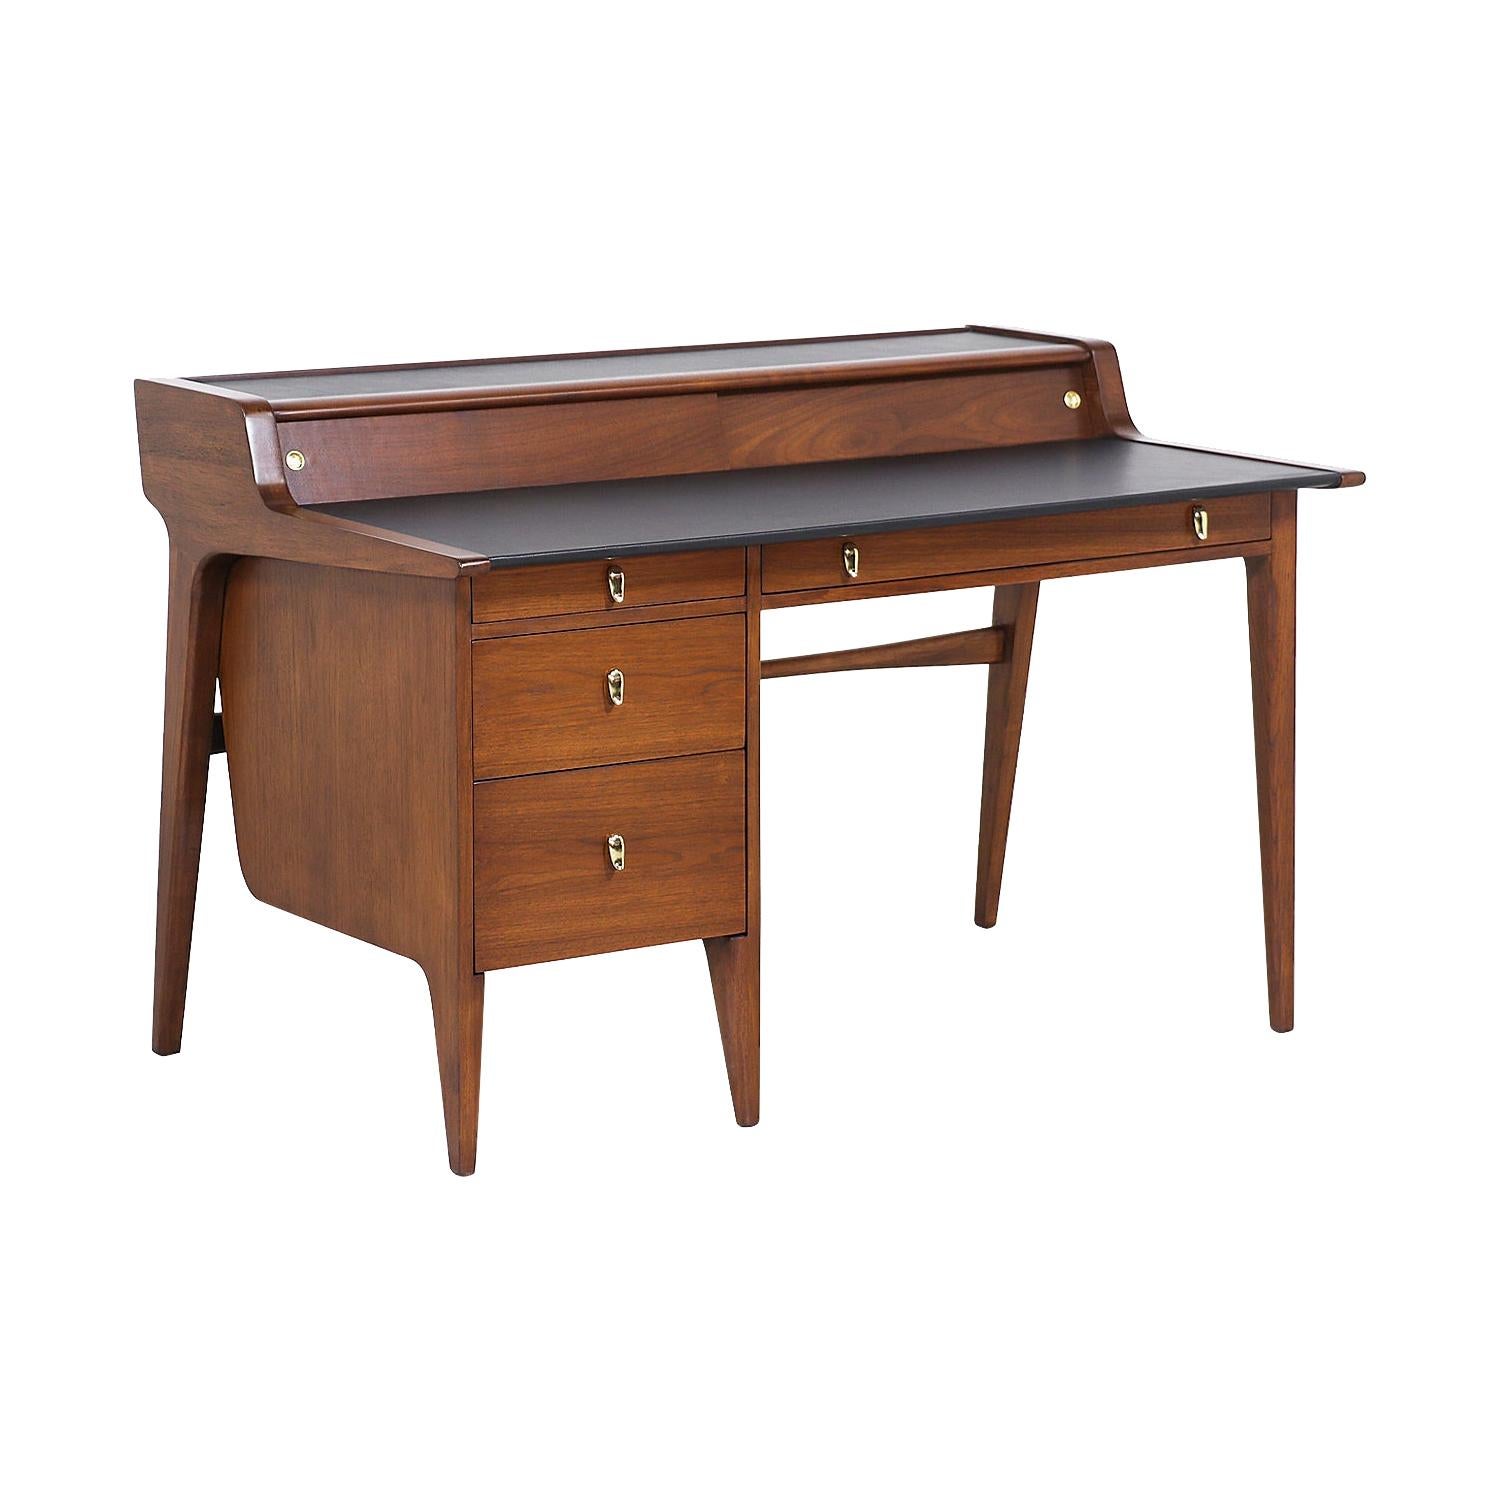 John Van Koert "Perspective" Model K80 Executive Desk for Drexel